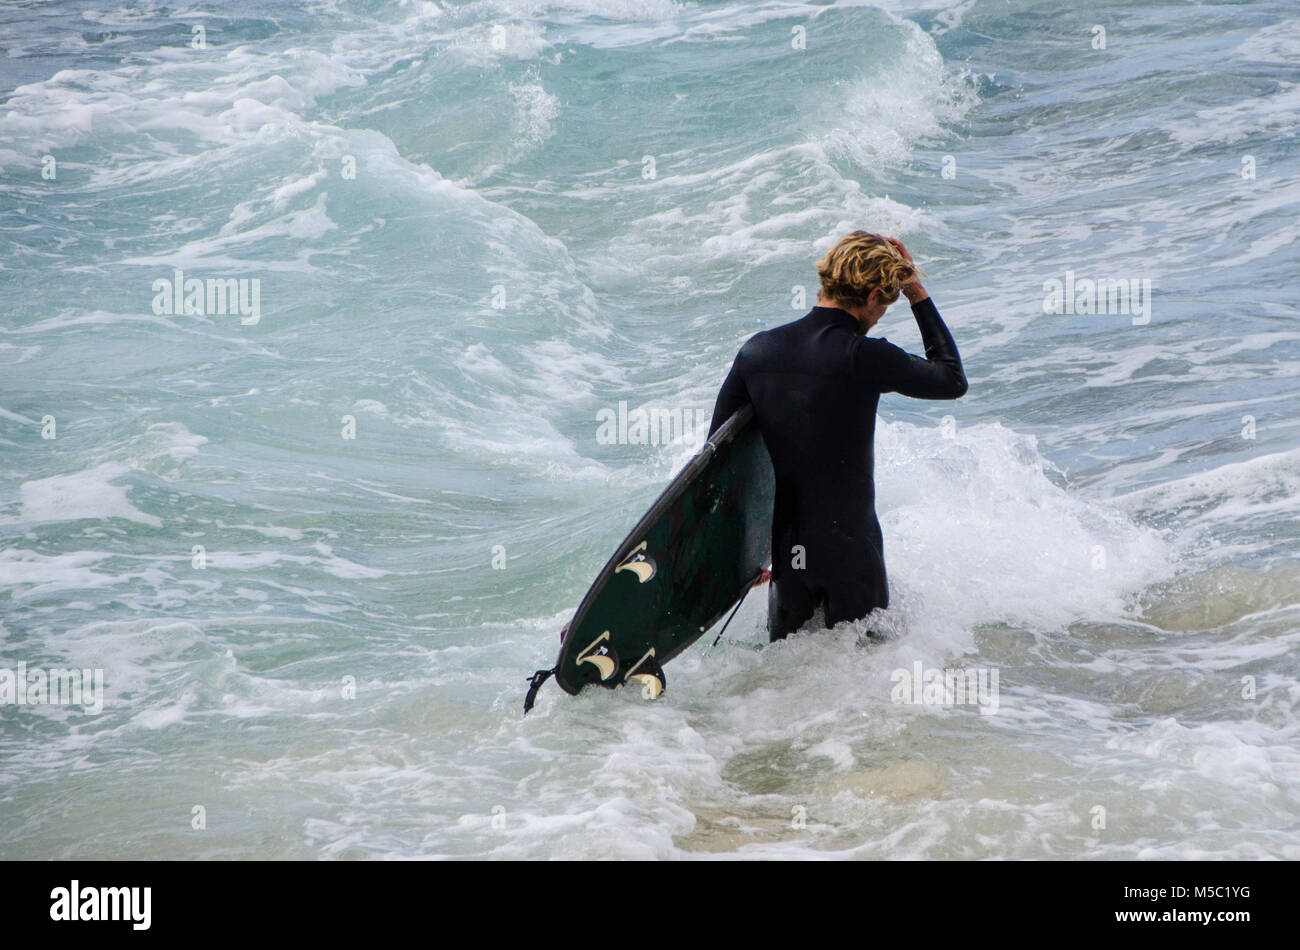 Männliche Surfer zu Fuß durch Wellen mit Surfbrett. Freiheit und Erwartung als männlich, Spaziergänge zu surfen nächste Welle. Stockfoto